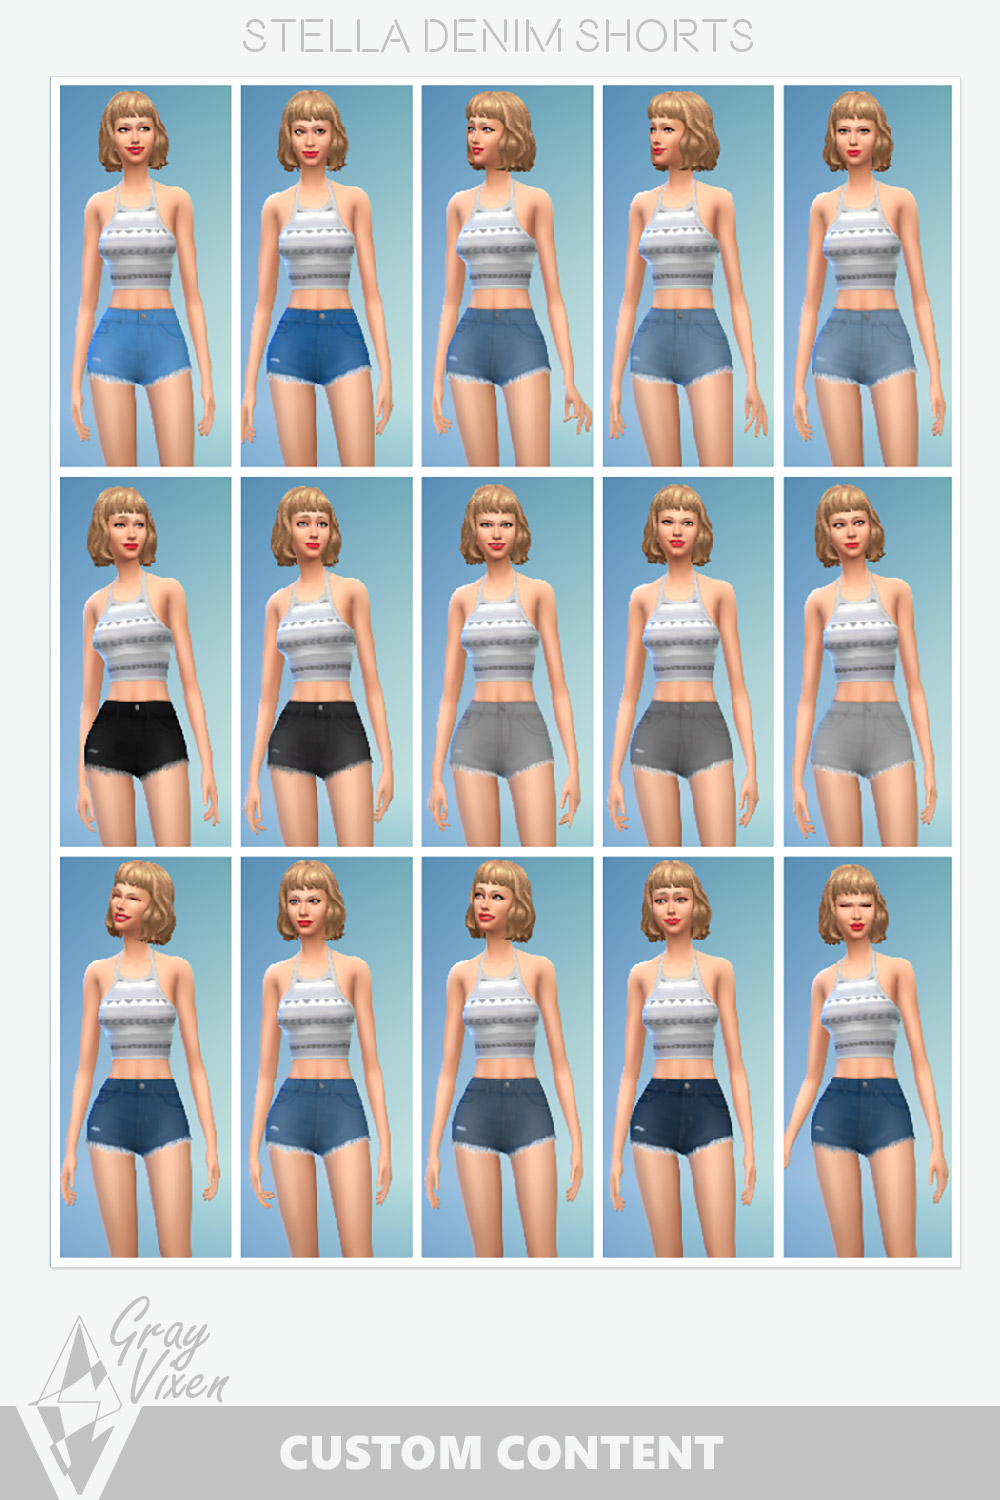 The sims 4 CC Mini Shorts